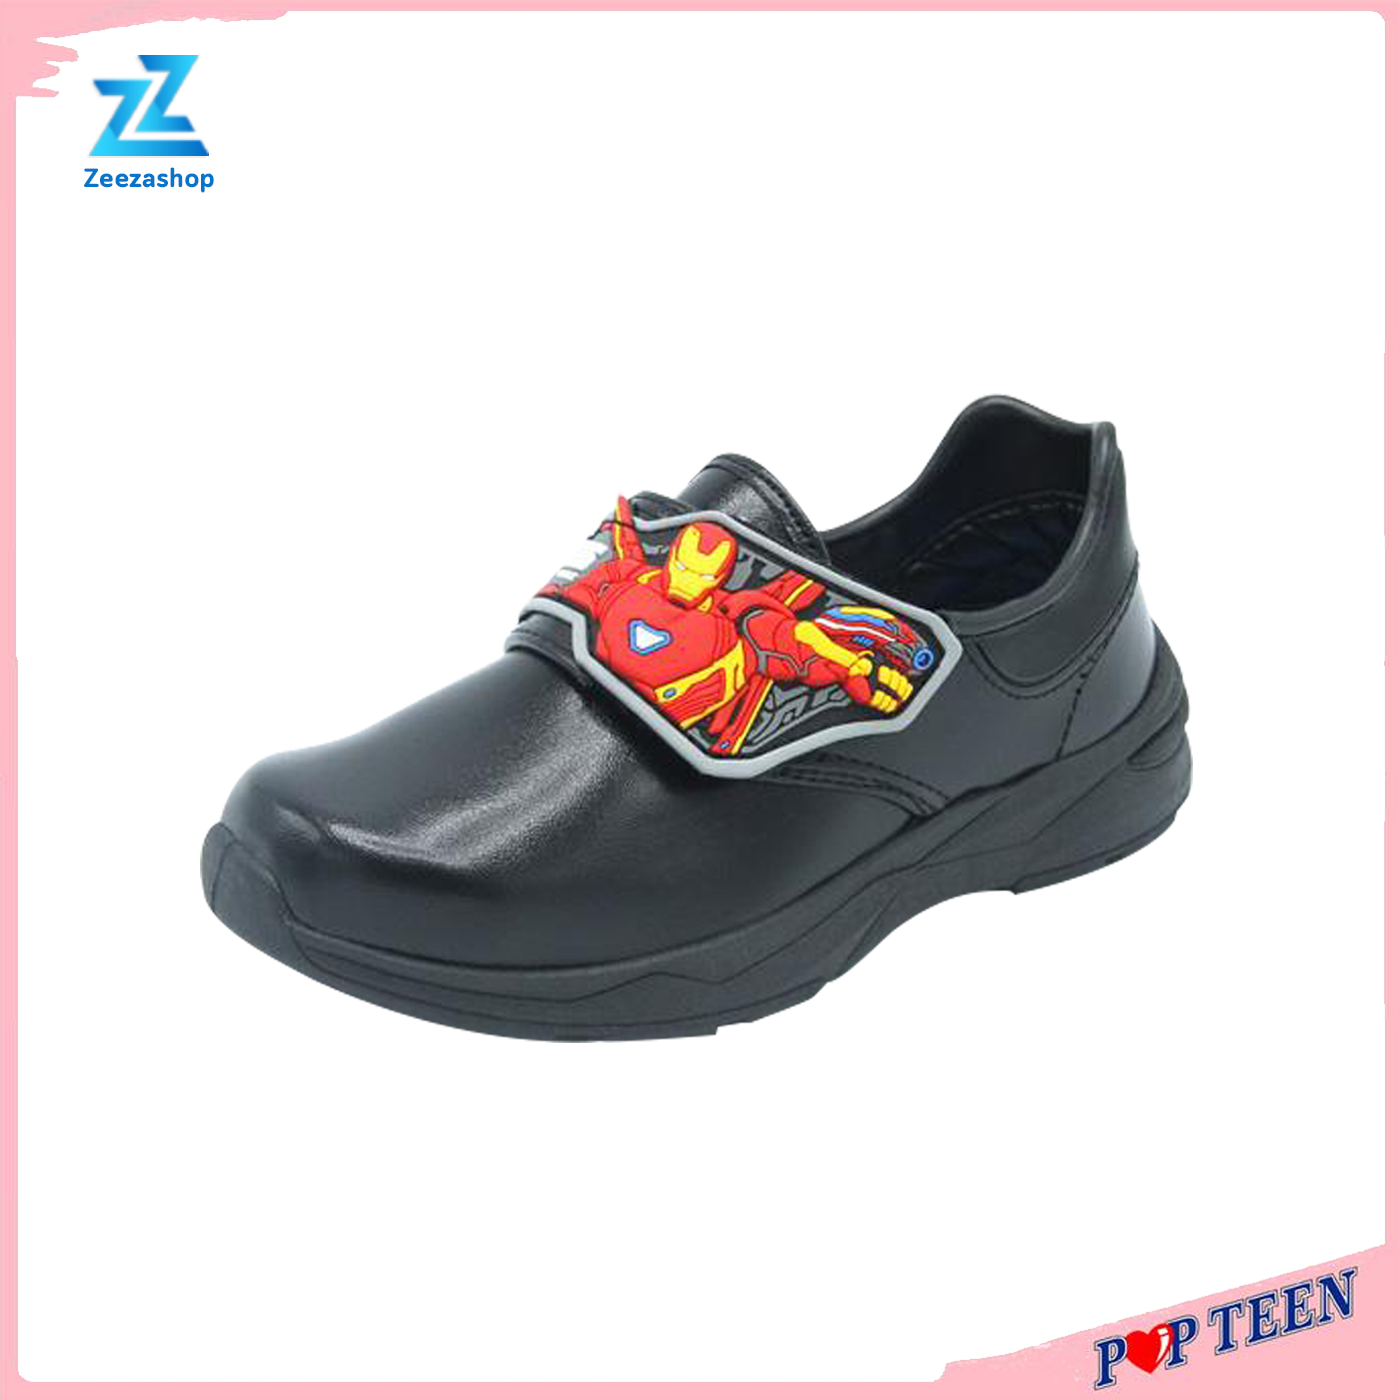 Popteen รองเท้าเด็กผู้ชาย เท้านักเรียนเด็กอนุบาลชาย รองเท้านักเรียนชาย ไอรอนแมน อินฟินิตี้วอร์ สีดำ  Size 25-32 (PM22A) นุ่มเท้า ใส่สบายมาก ลายการ์ตูนใหม่ล่าสุด ของแท้จากโรงงาน 100% ราคาถูก คุ้มค่าสุดๆ